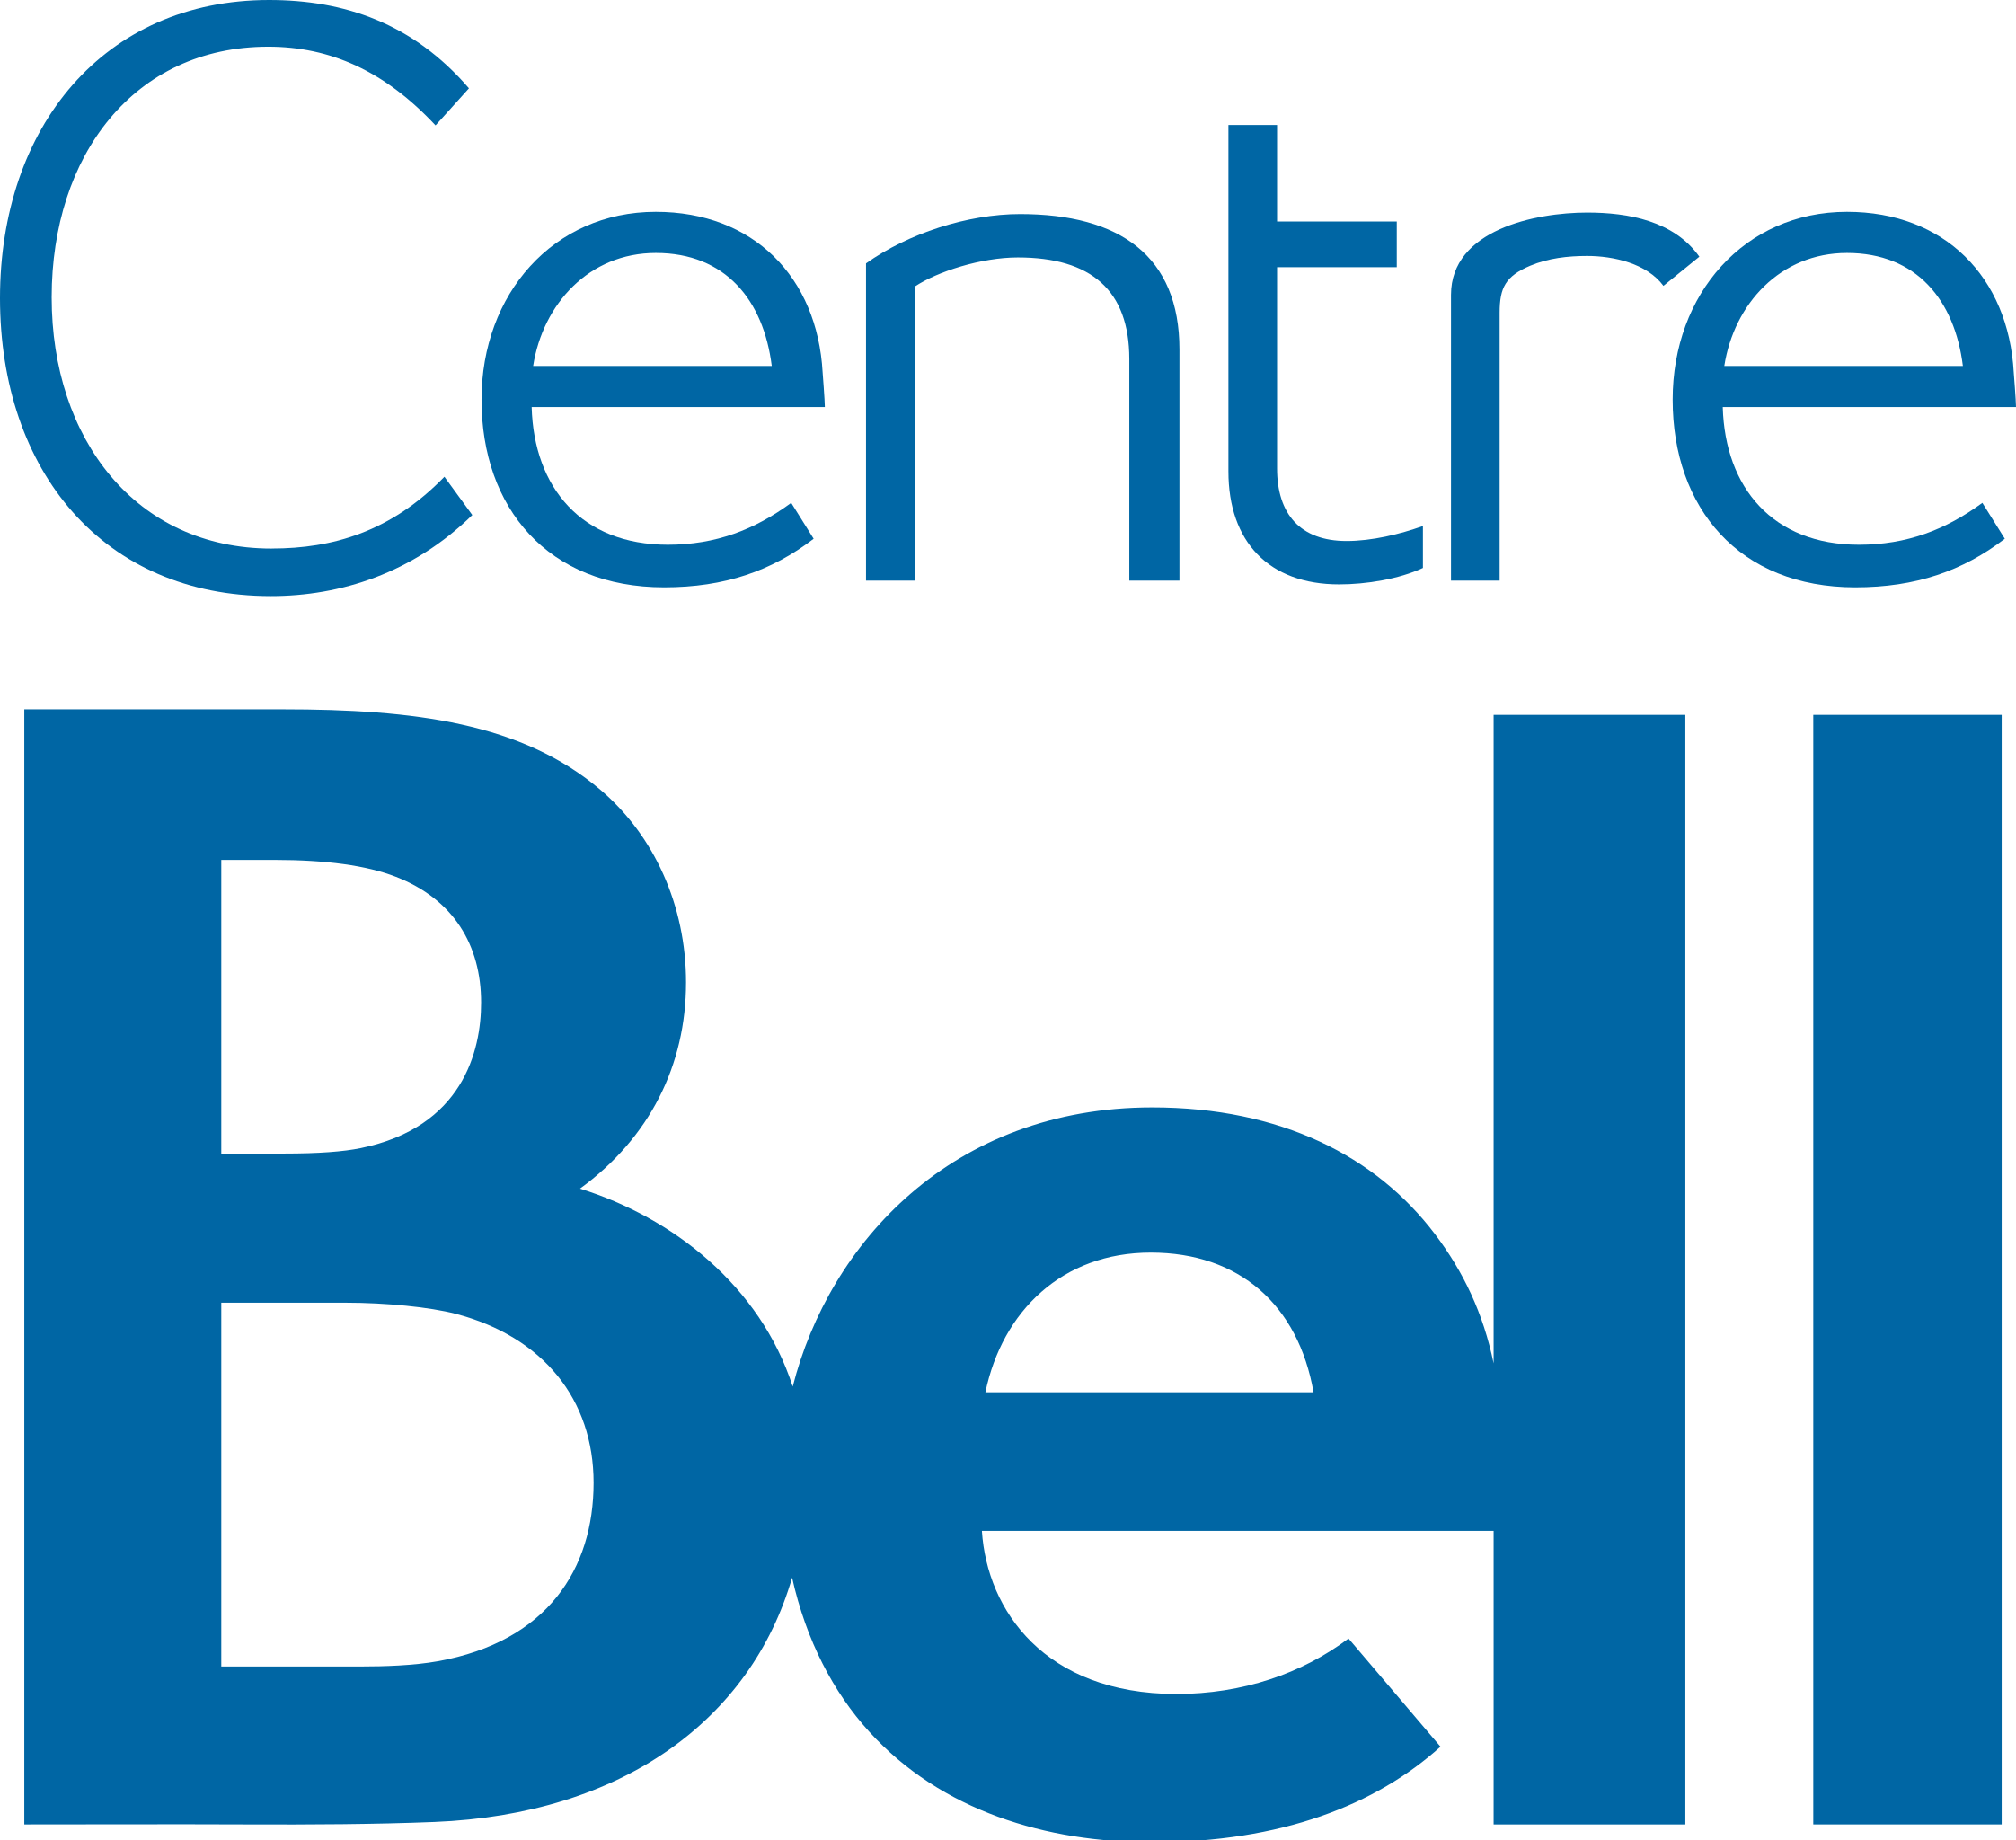 Bell Centre - Wikipedia